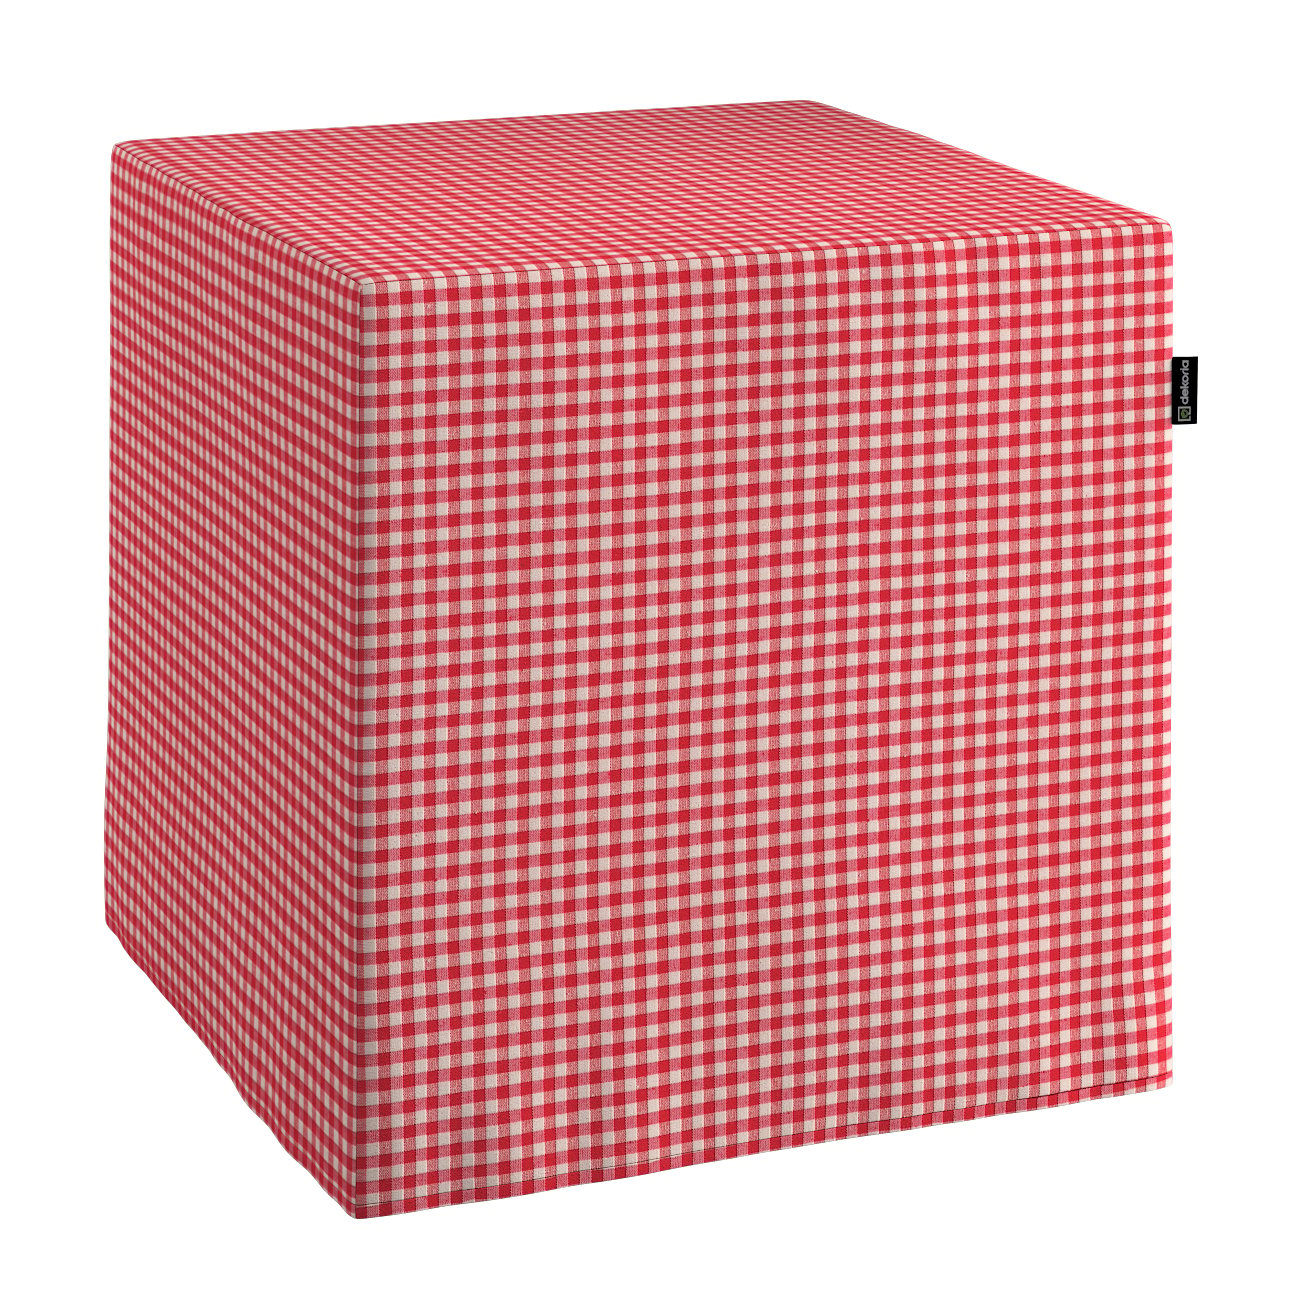 Dekoria Sedák Cube - kostka pevná 40x40x40, červeno - bílá jemná kostka, 40 x 40 x 40 cm, Quadro, 136-15